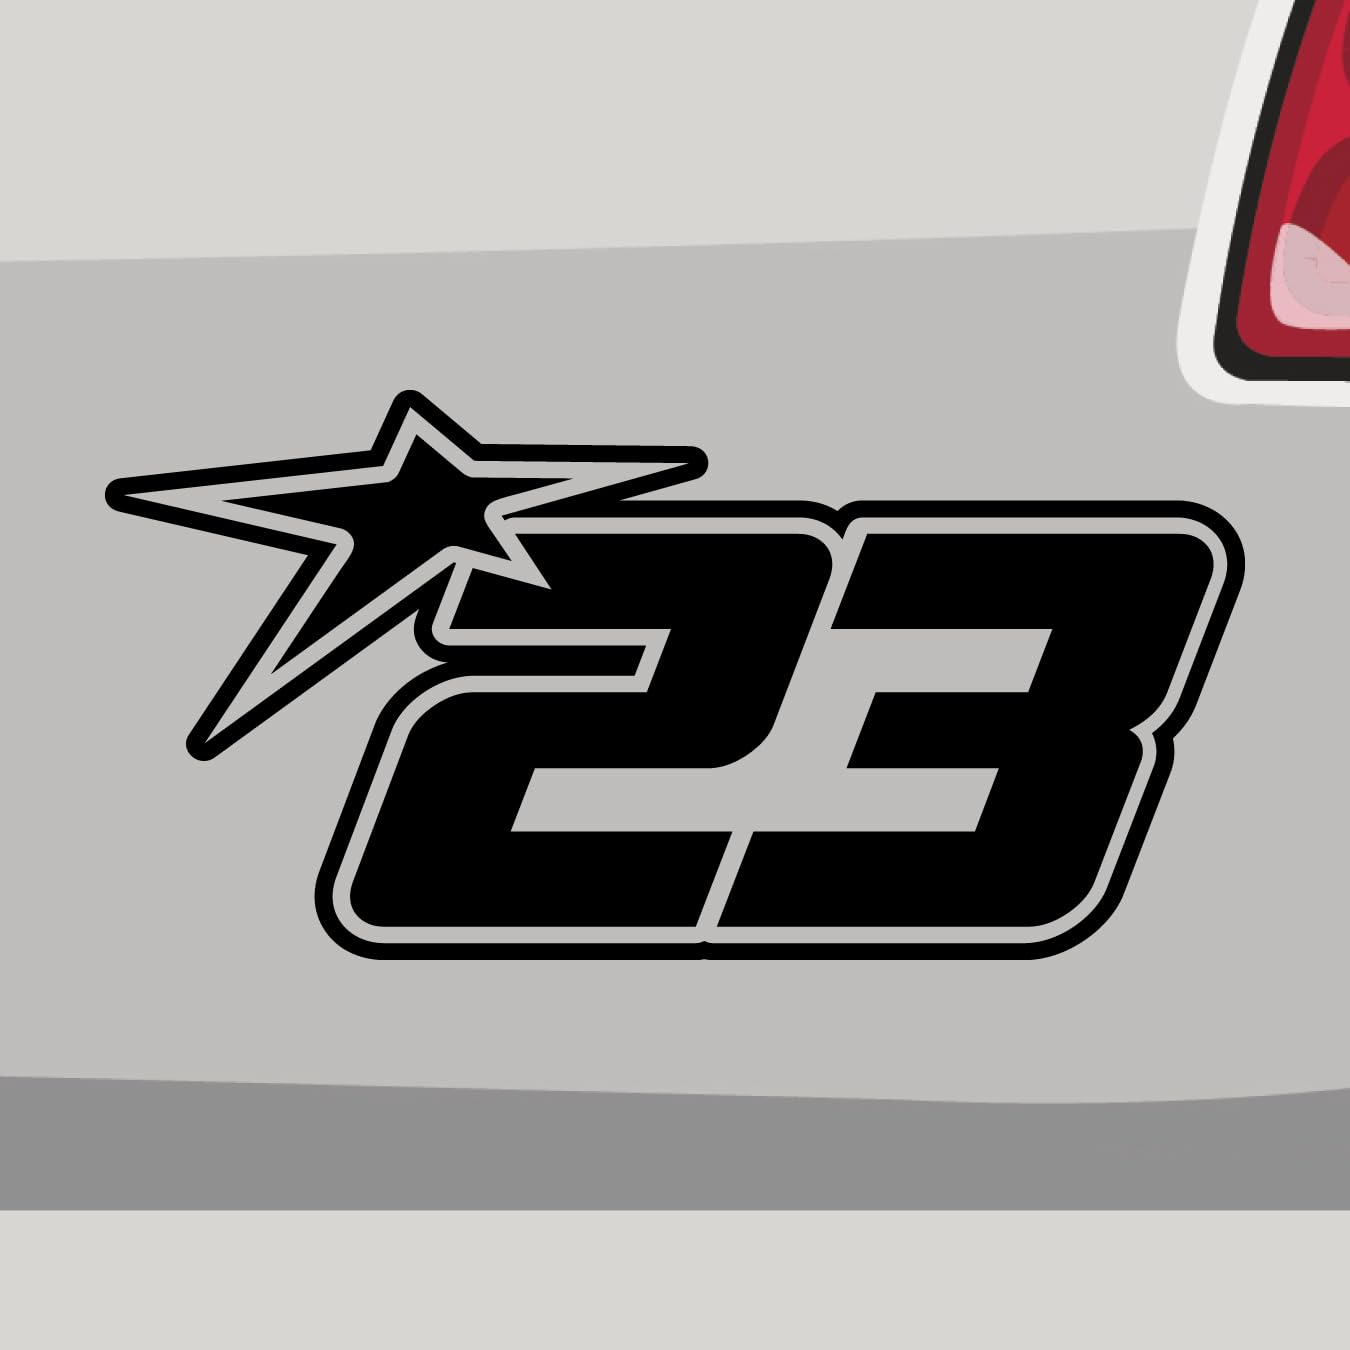 Stickerfreaks Startnummer 23 Aufkleber Race Track Sticker Star Stern Auto Bike Decal Vinyl JDM Aufkleber Größe: 10x5cm (S) | Farbe: 90-Silber | Racenumber Sticker Kleber Deko Tuning Zahl von Stickerfreaks